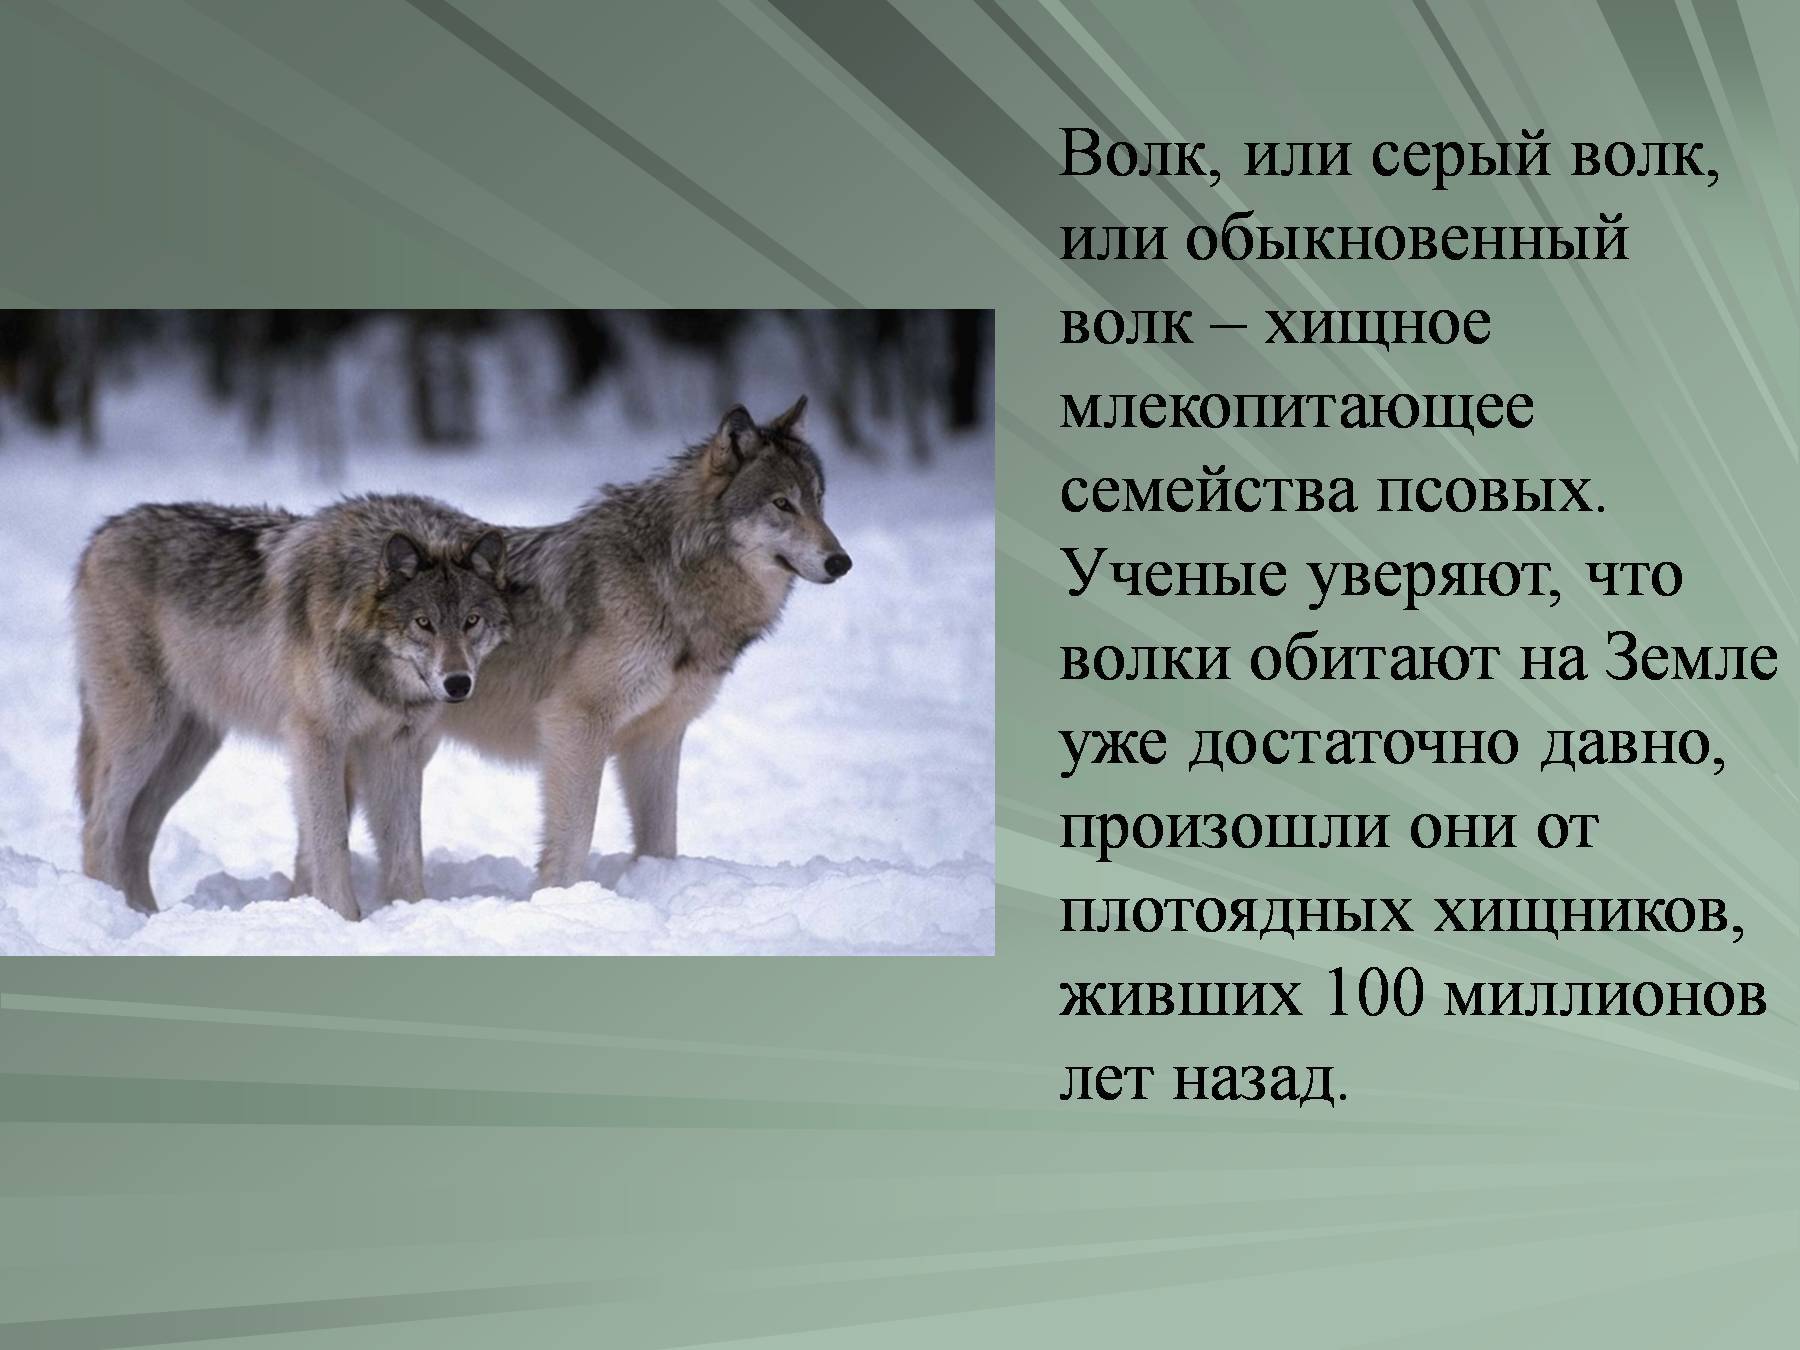 Небольшой доклад о волке